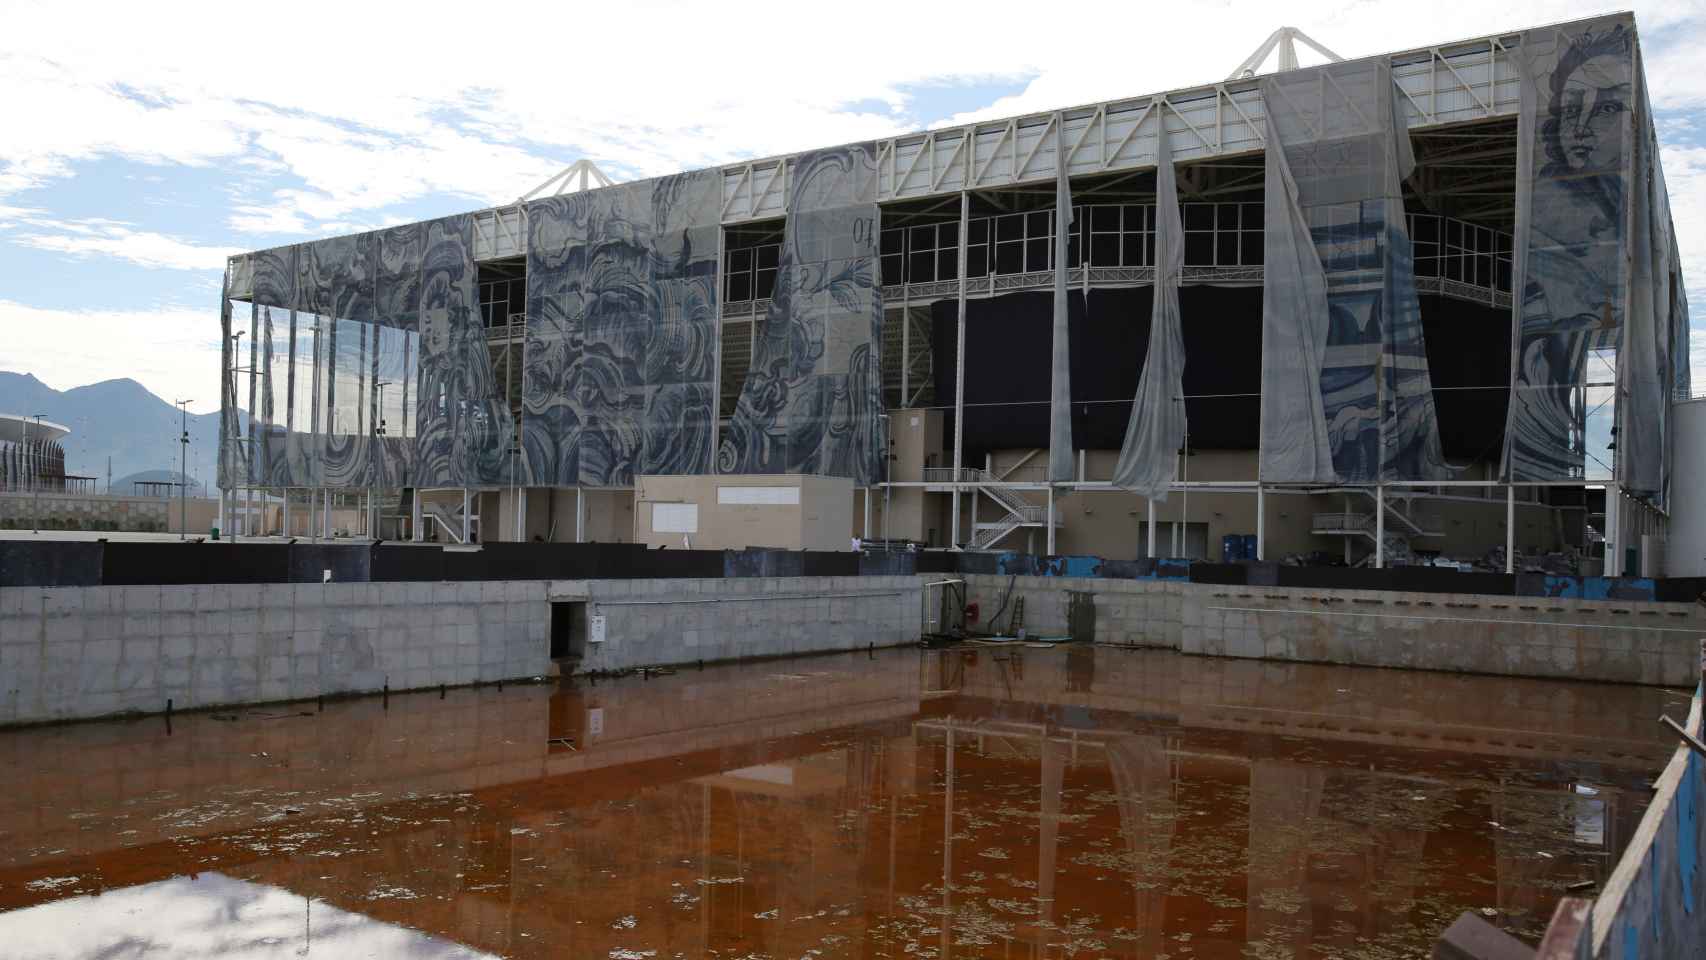 Río 2016: el deplorable estado de las instalaciones olímpicas seis meses después de los Juegos